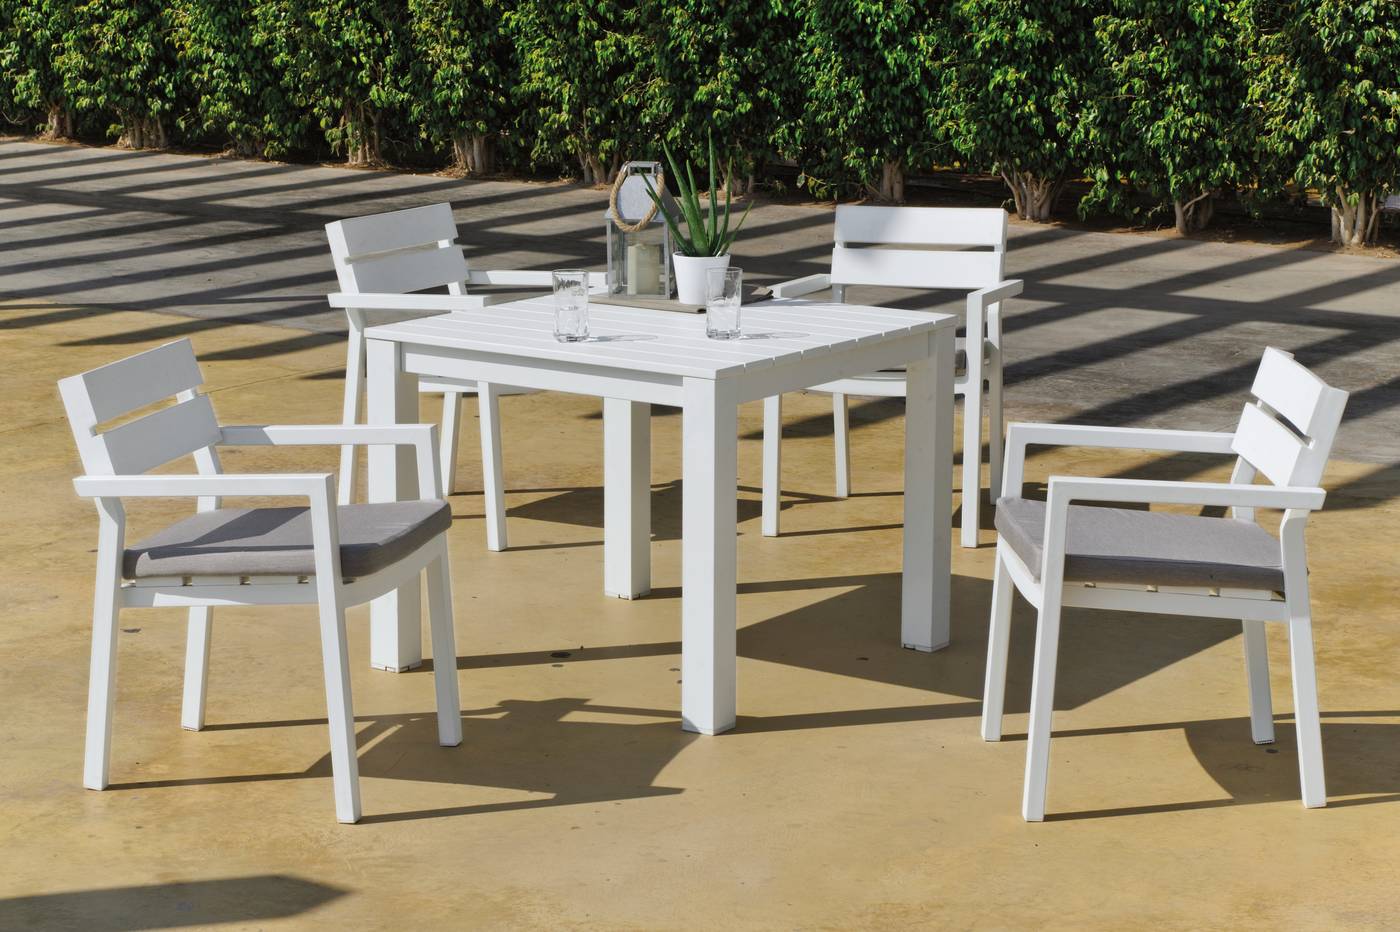 Sillón Aluminio Luxe Marlet - Sillón lujo para jardín o terraza. Estructura, asiento y respaldo de aluminio color blanco.